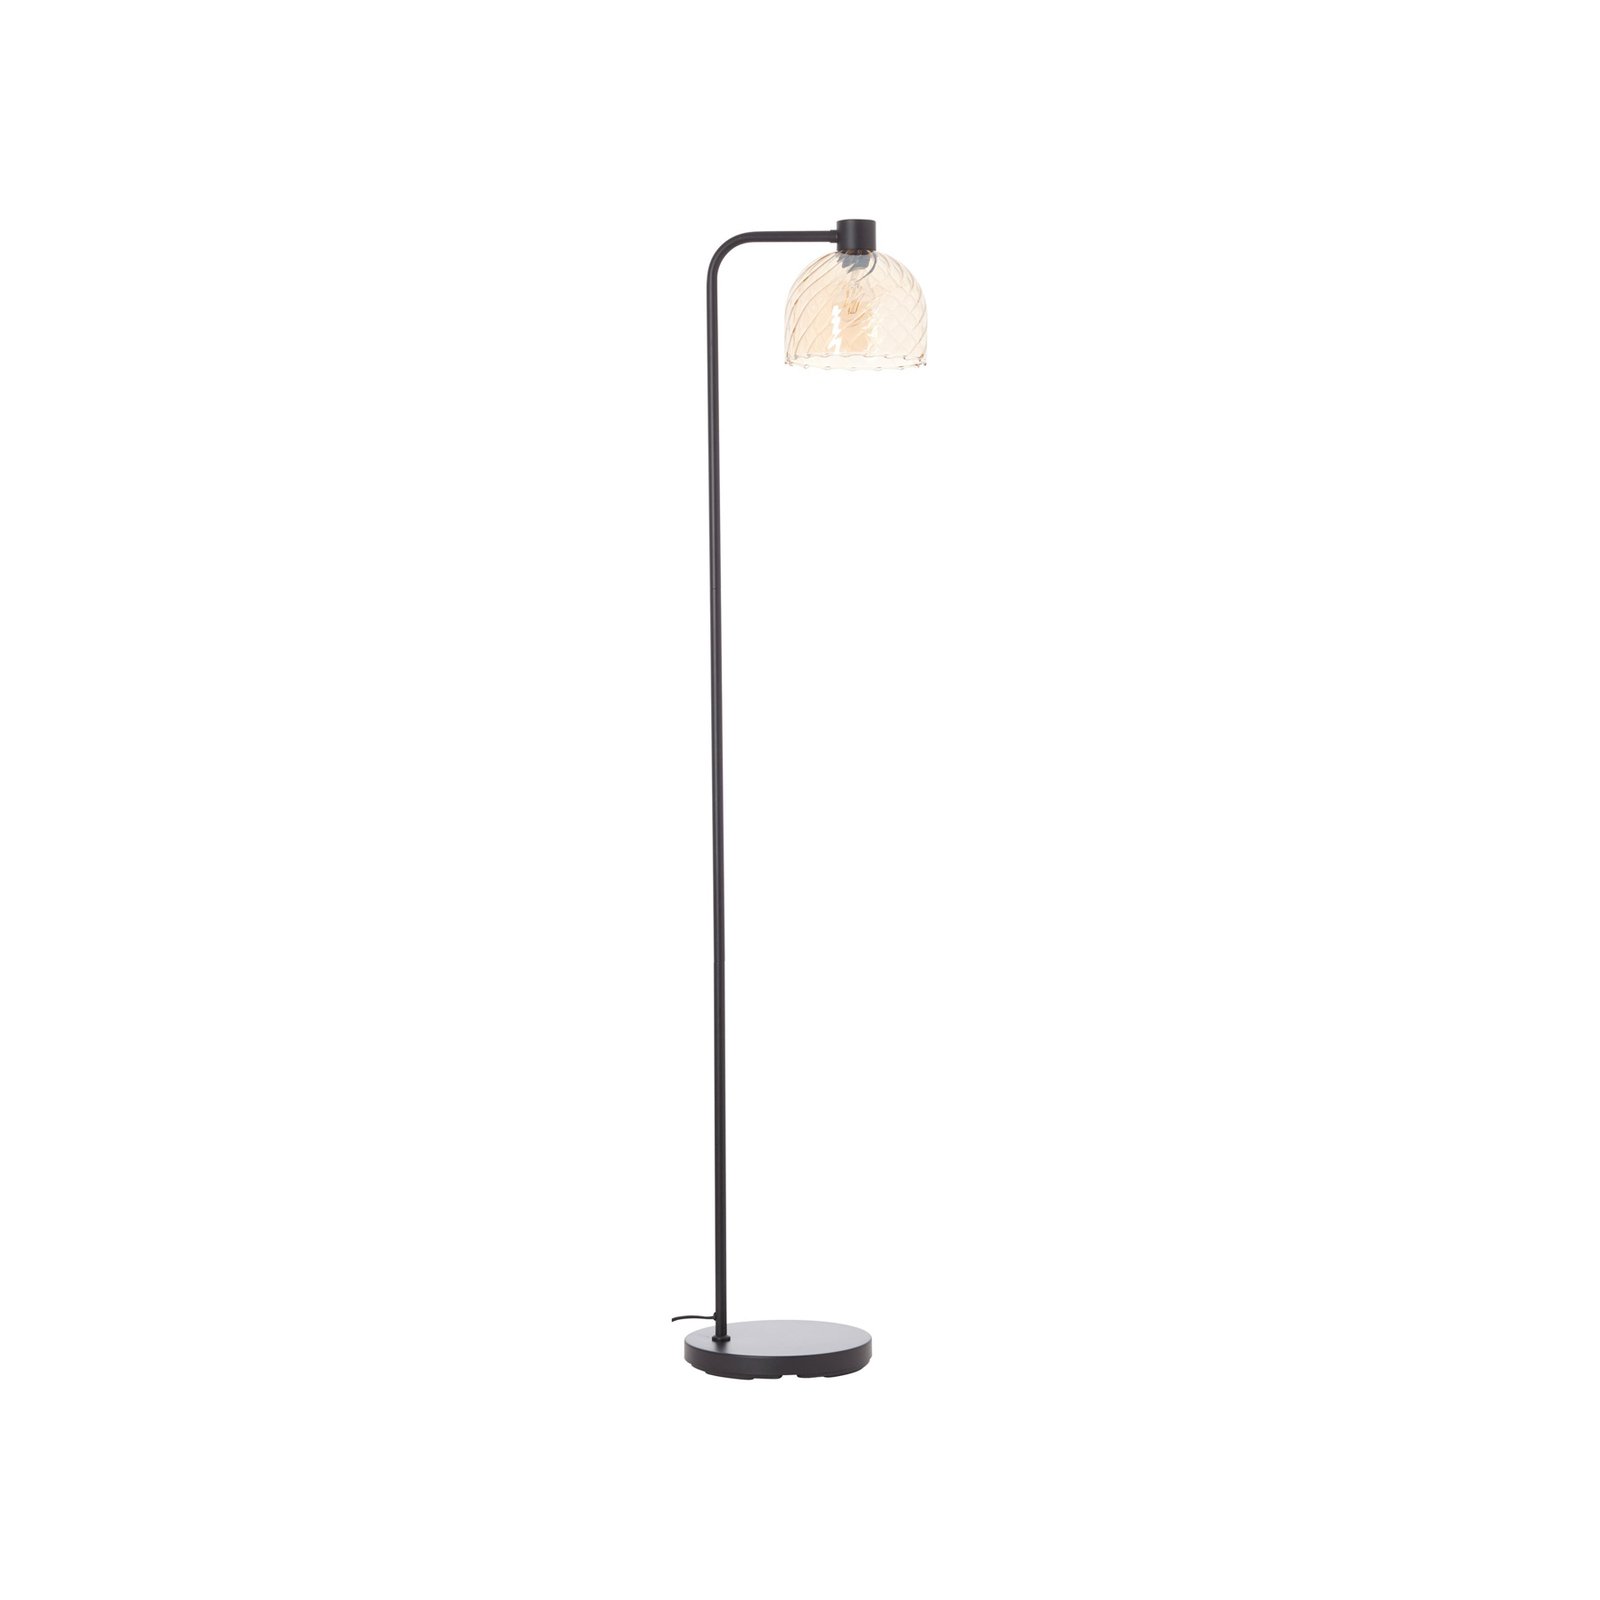 Casto podna lampa, visina 150 cm, jantar, staklo/metal